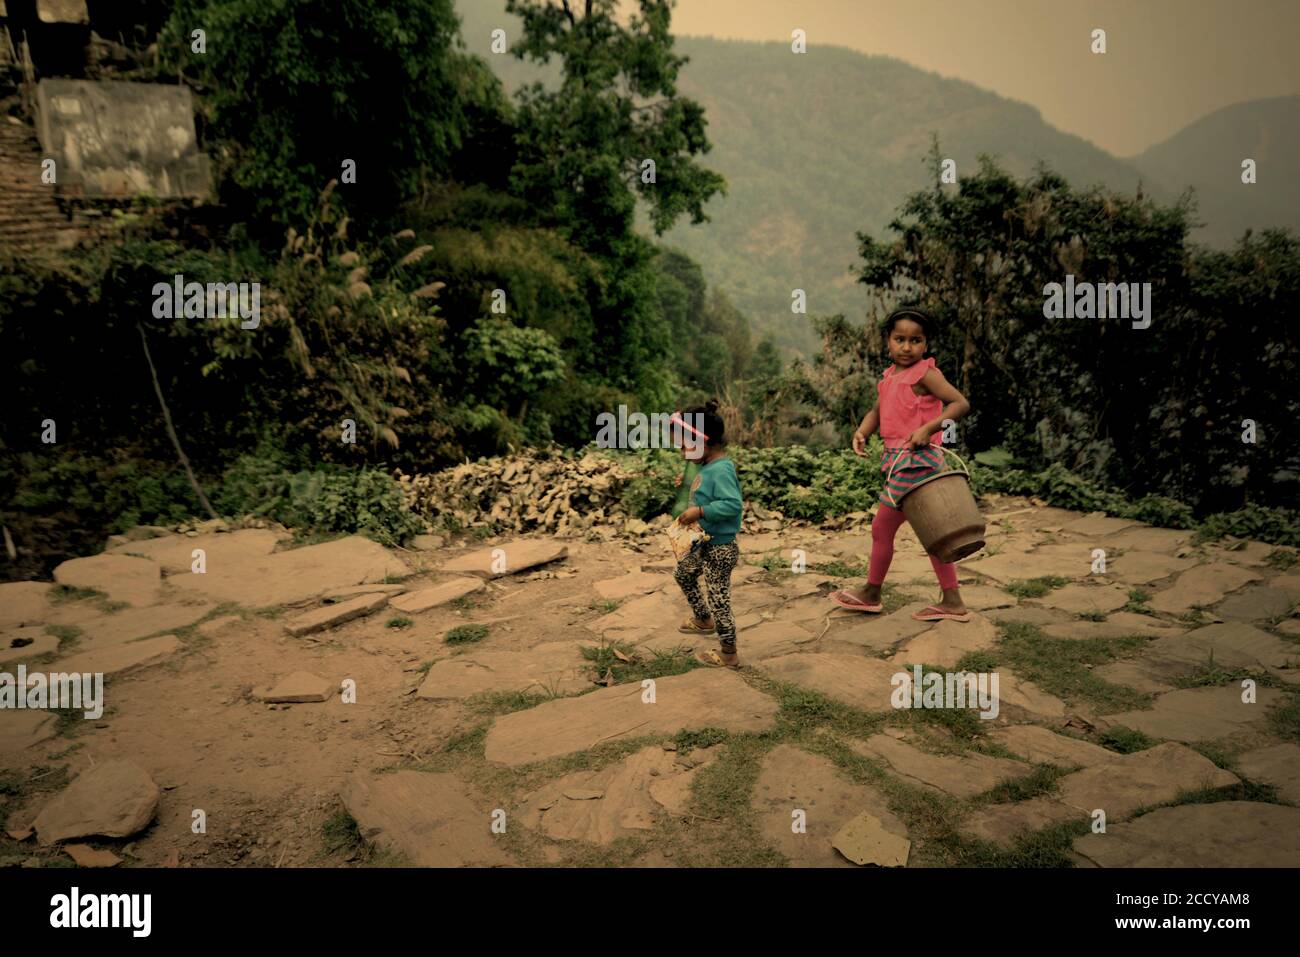 Les enfants vont prendre de l'eau d'une source d'eau communautaire dans la région de Panchase, province de Gandaki Pradesh, au Népal. Banque D'Images